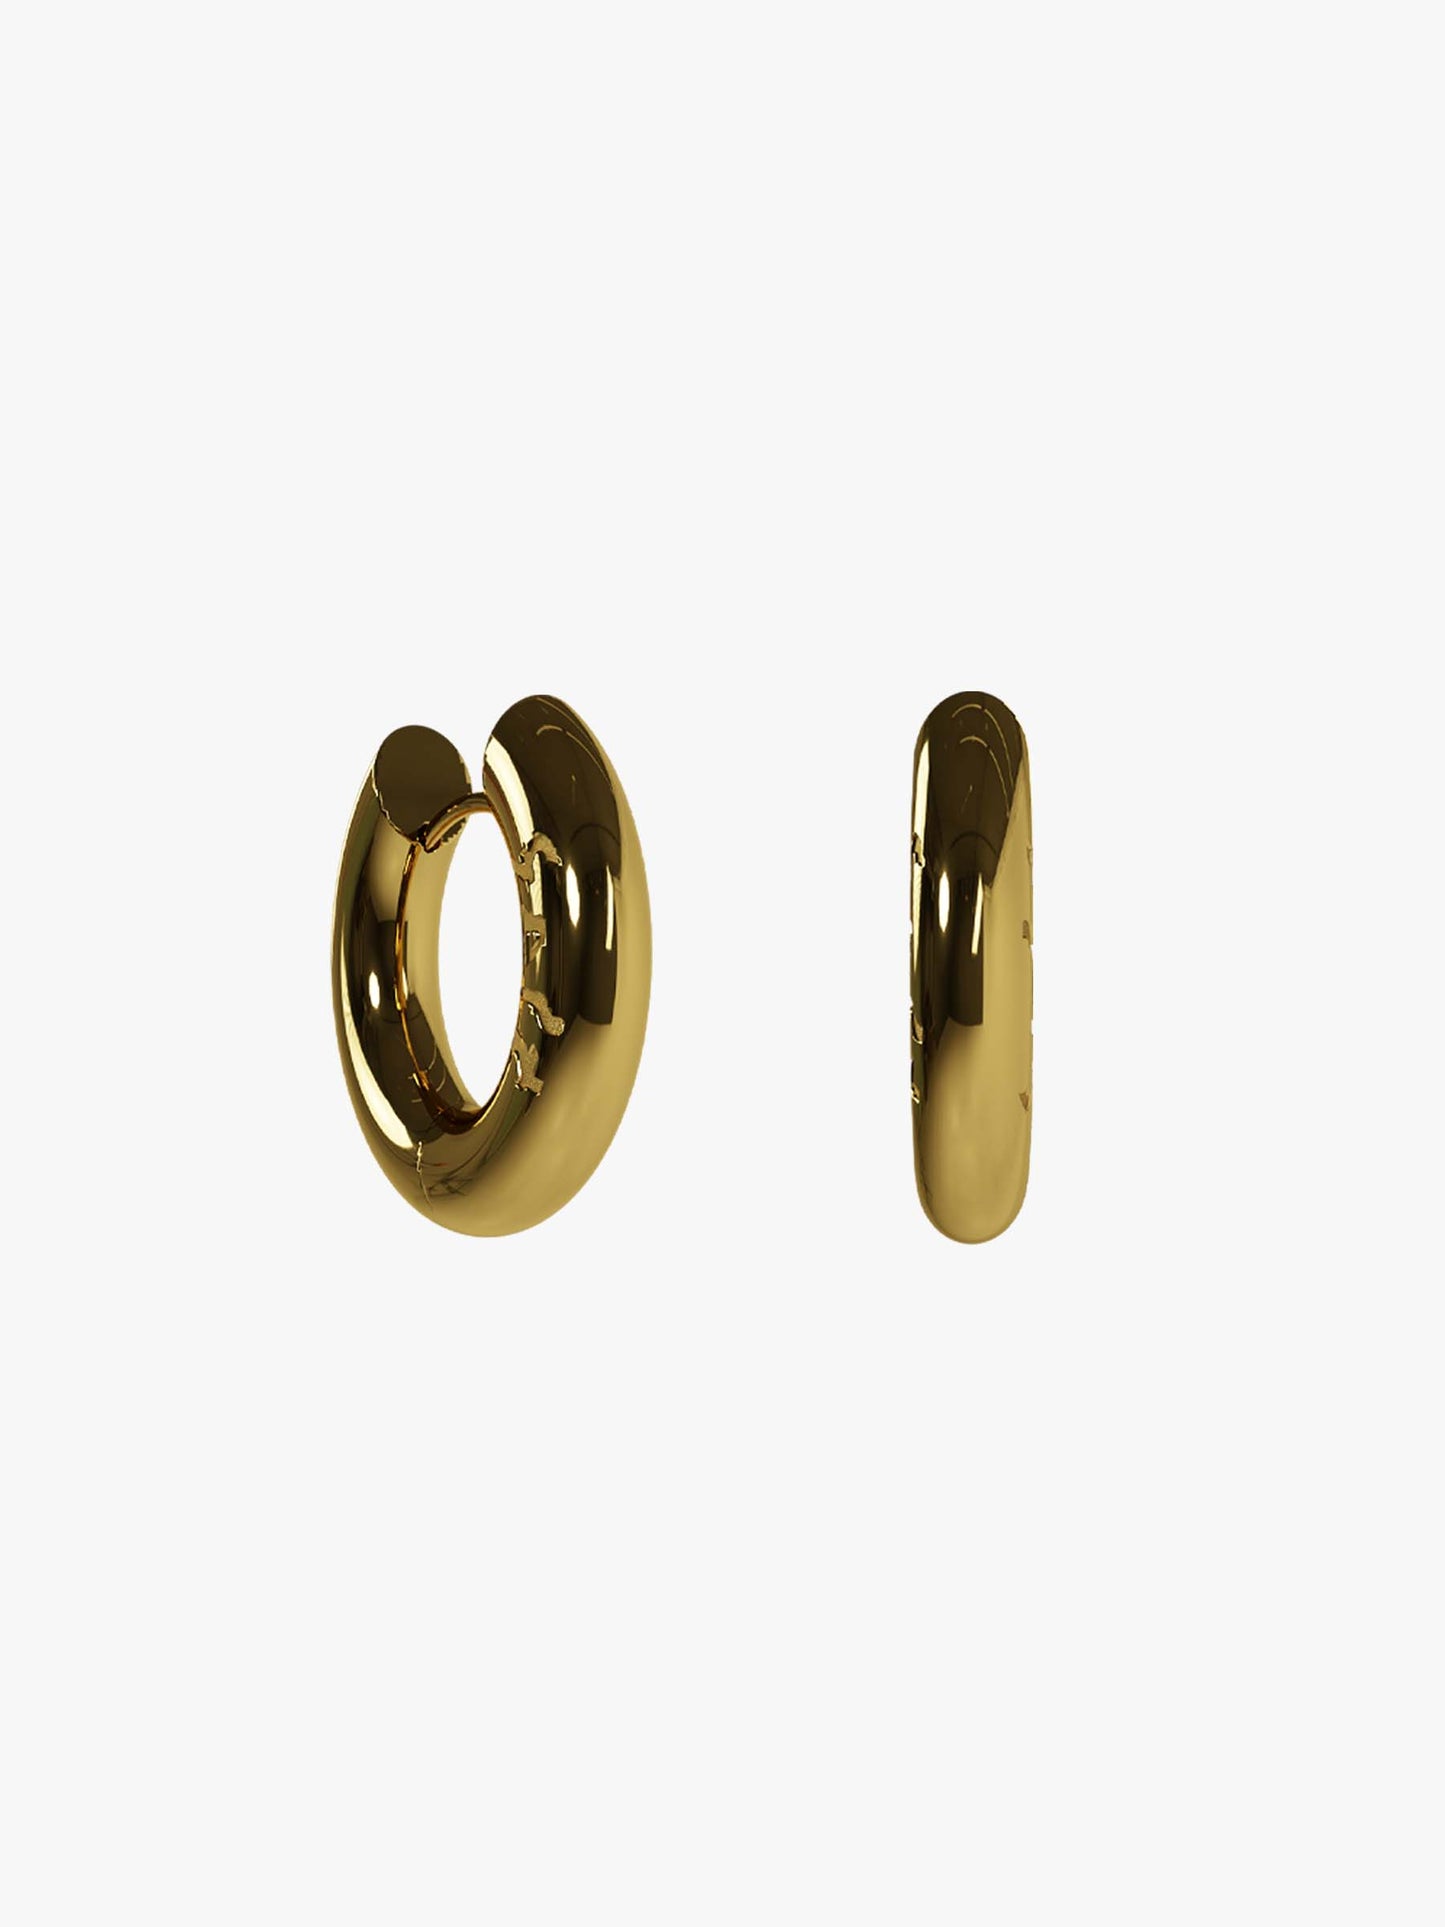 Eba gold 4mm earring (pair)